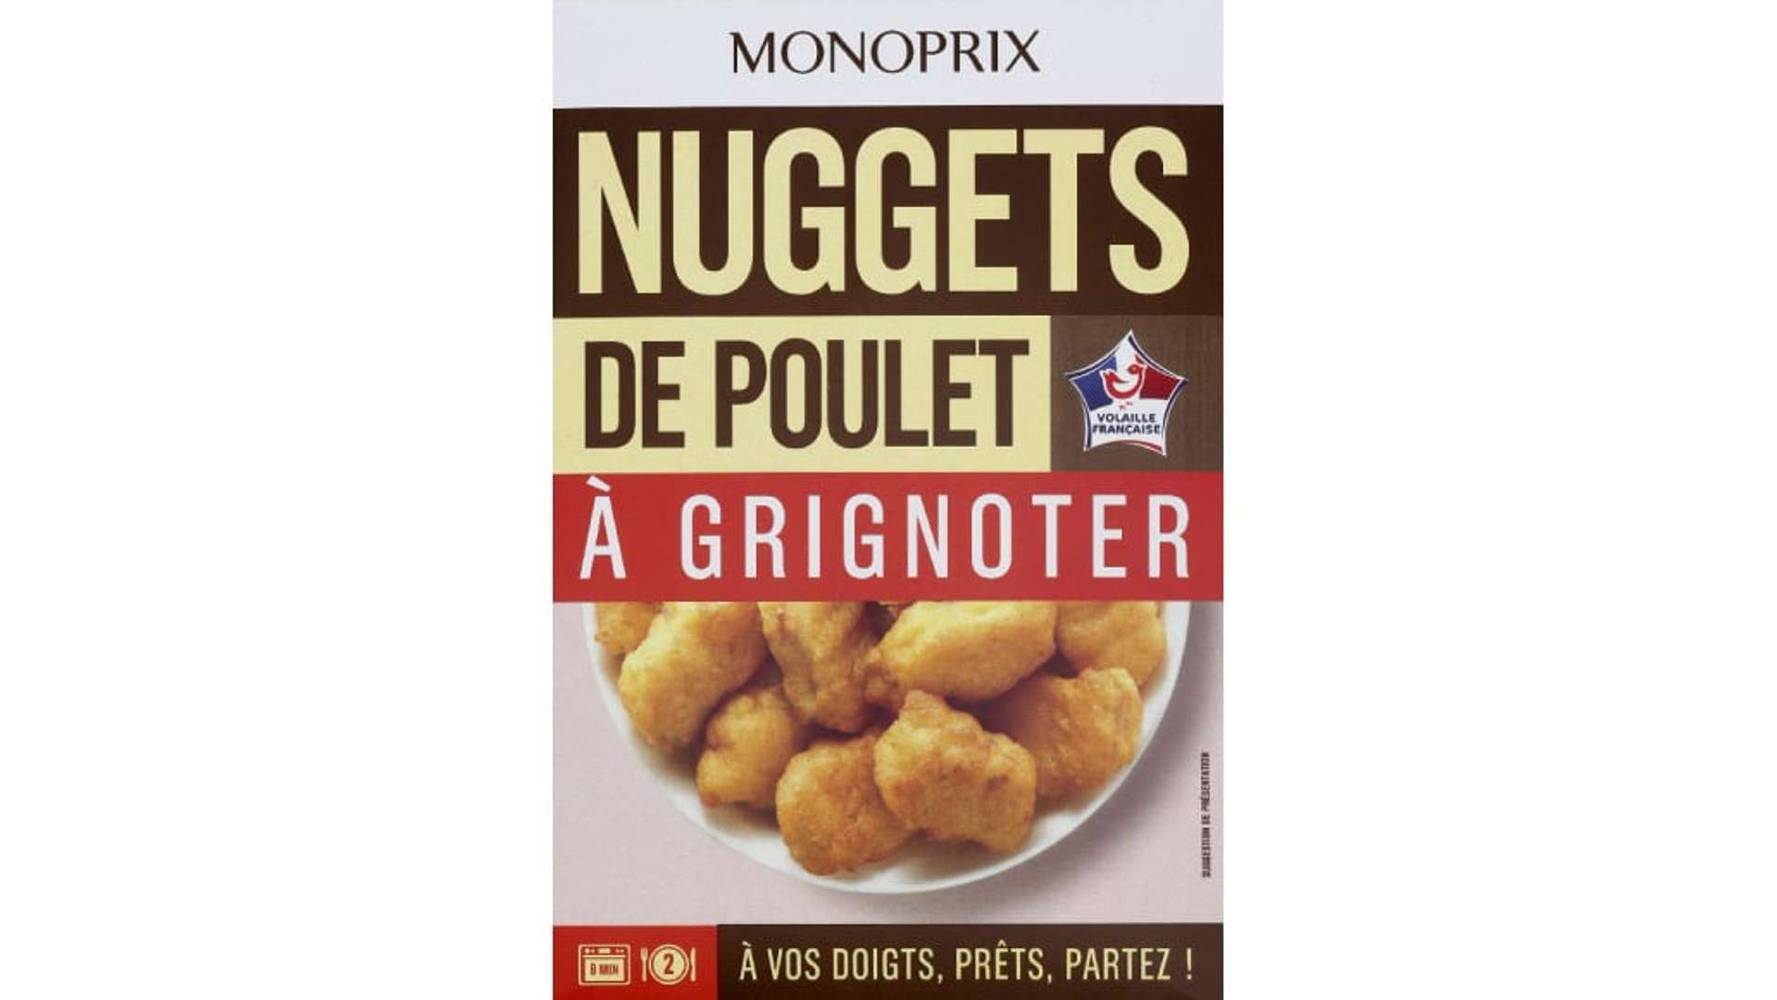 Monoprix Nuggets de poulet @ grignoter Le sachet de 200g